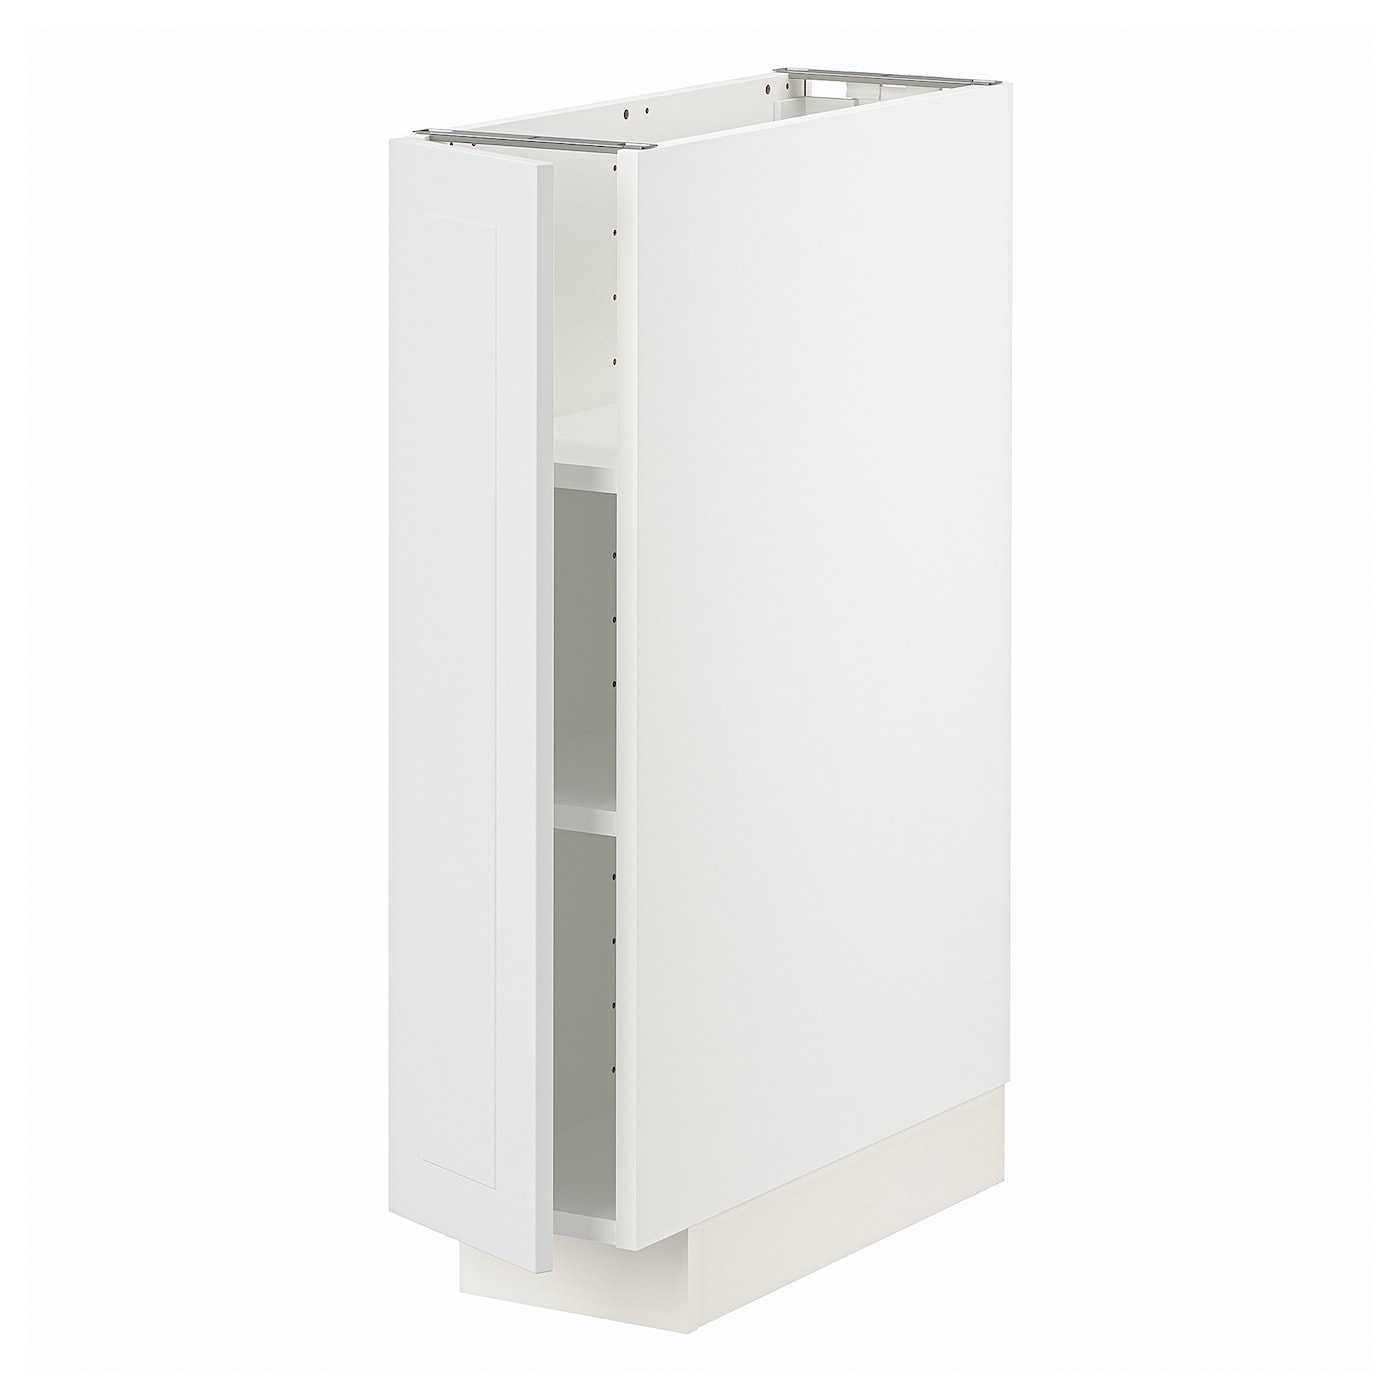 Напольный шкаф  - IKEA METOD, 88x62x20см, белый/серый, МЕТОД ИКЕА